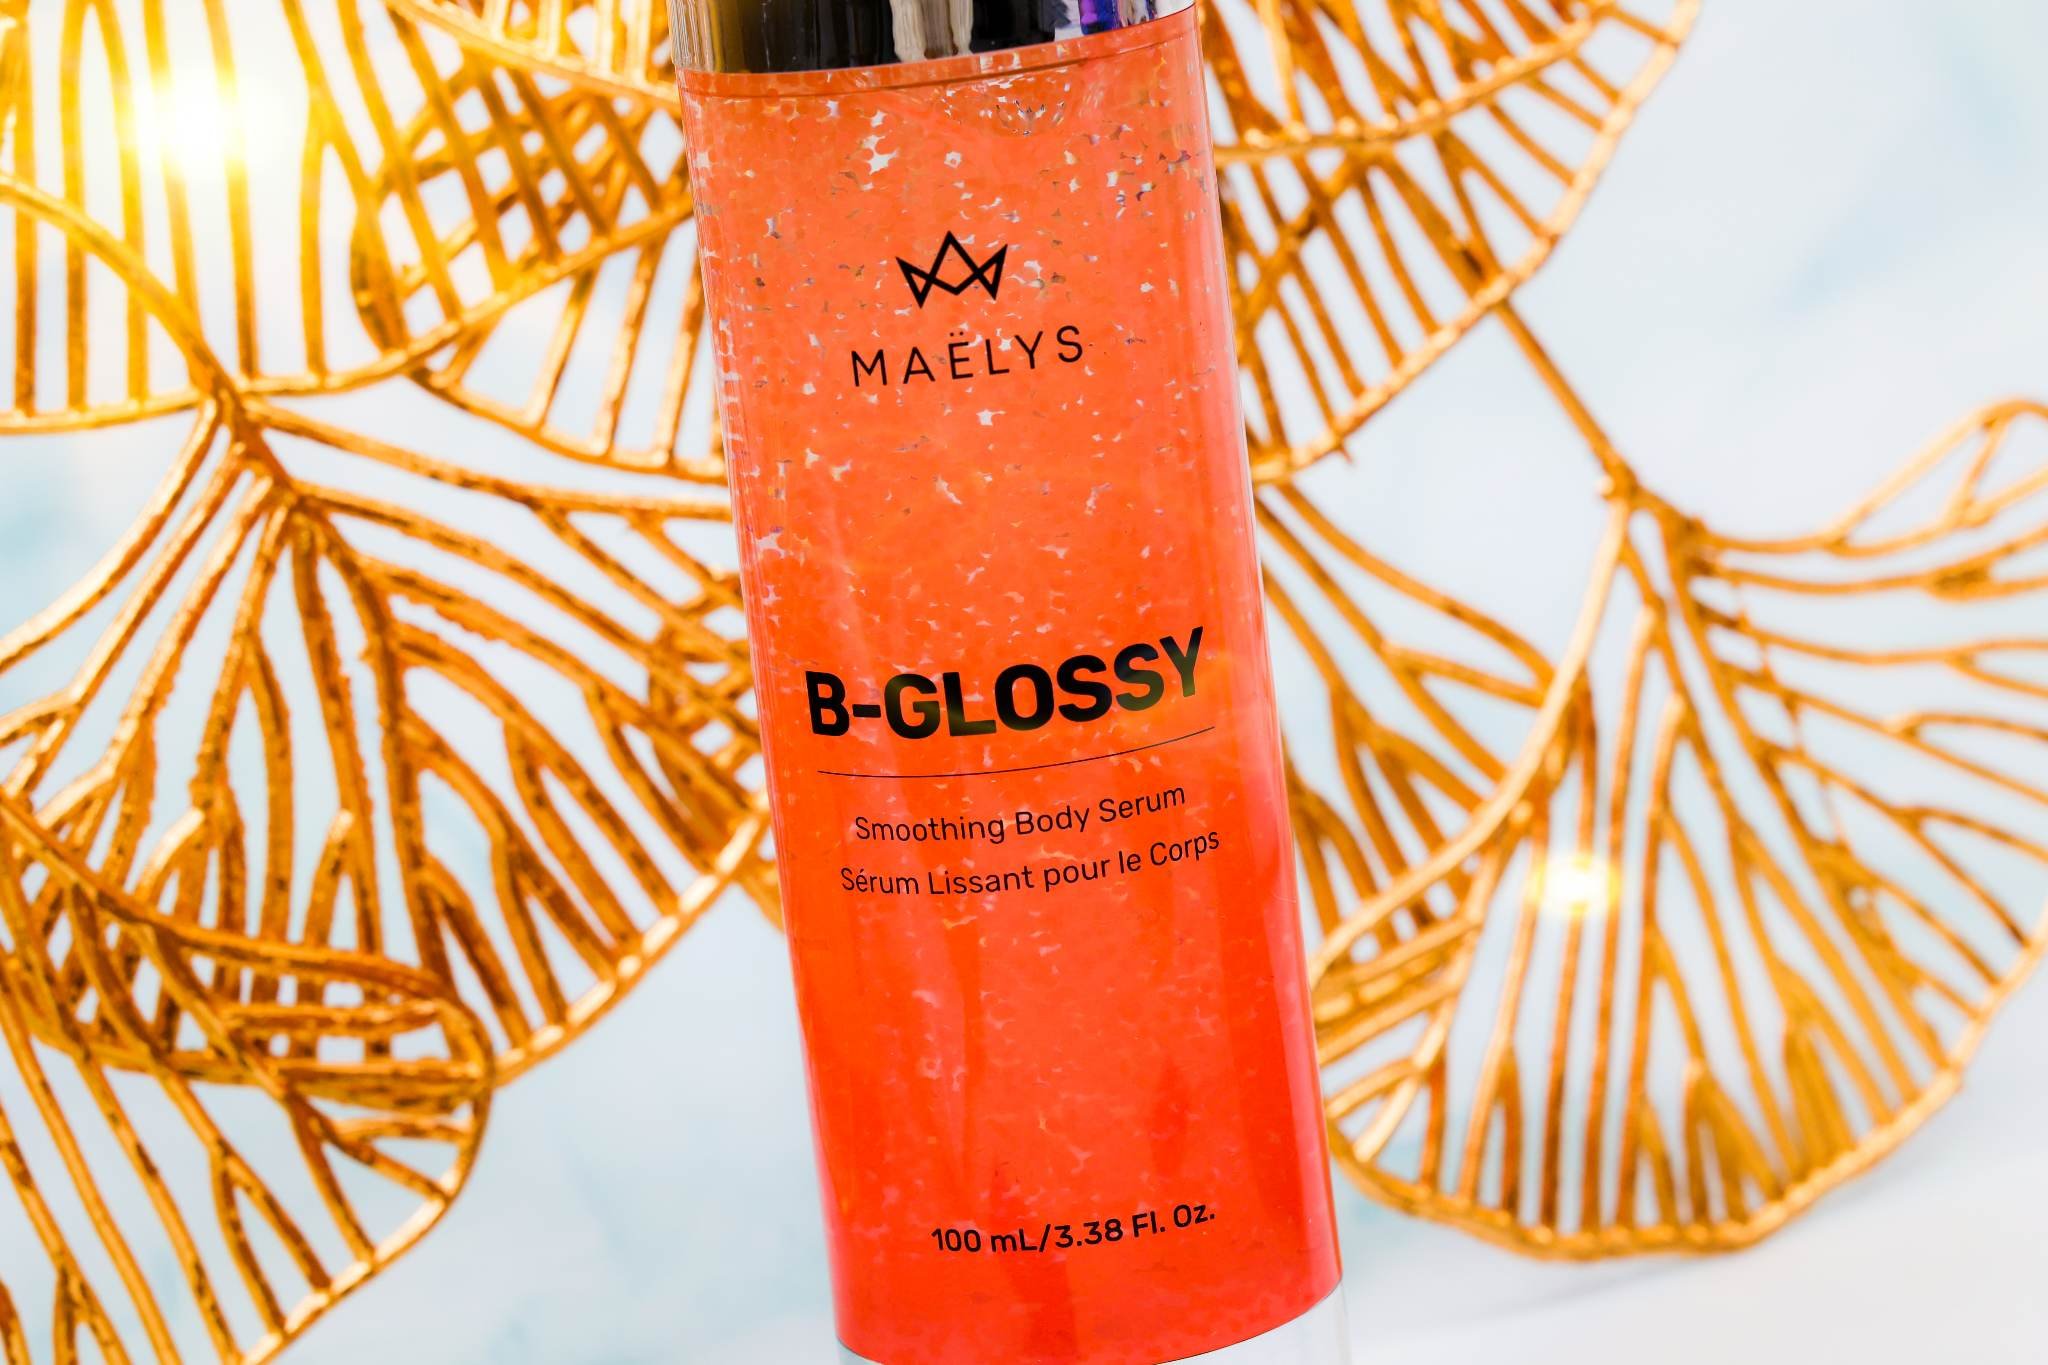 Maelys B-Glossy Smoothing Body Serum — Tishya's reviews